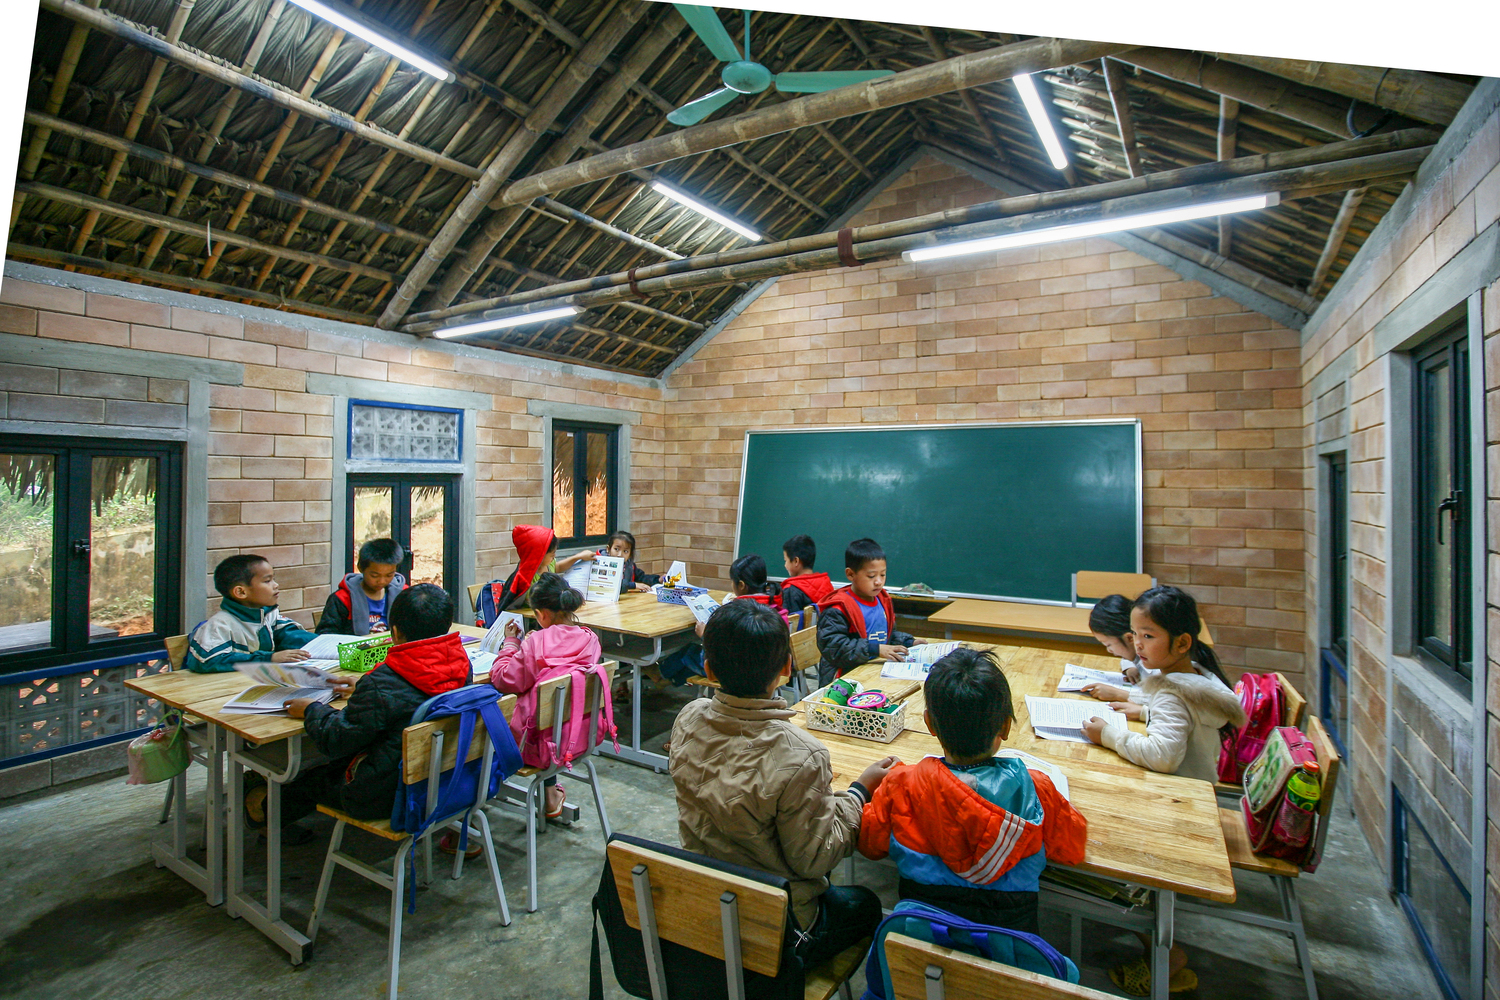 Hình ảnh bên trong lớp học với mái lợp mái, tường gạch, bàn ghế gỗ